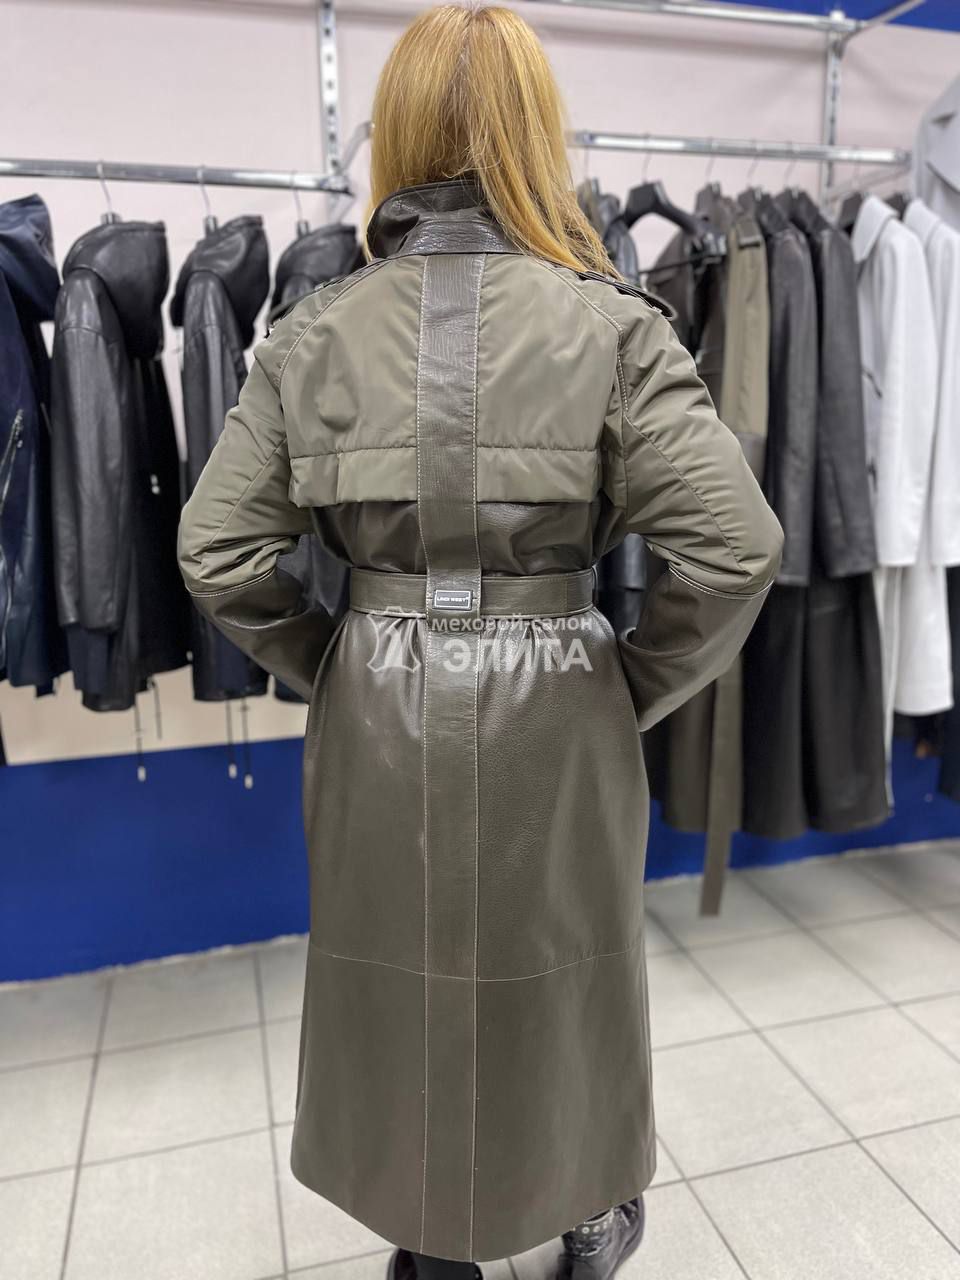 Кожаное пальто м-2804 р-р 44-52, цена 60500 рублей в интернет-магазине кожи и меха ЭЛИТА. Вид 2